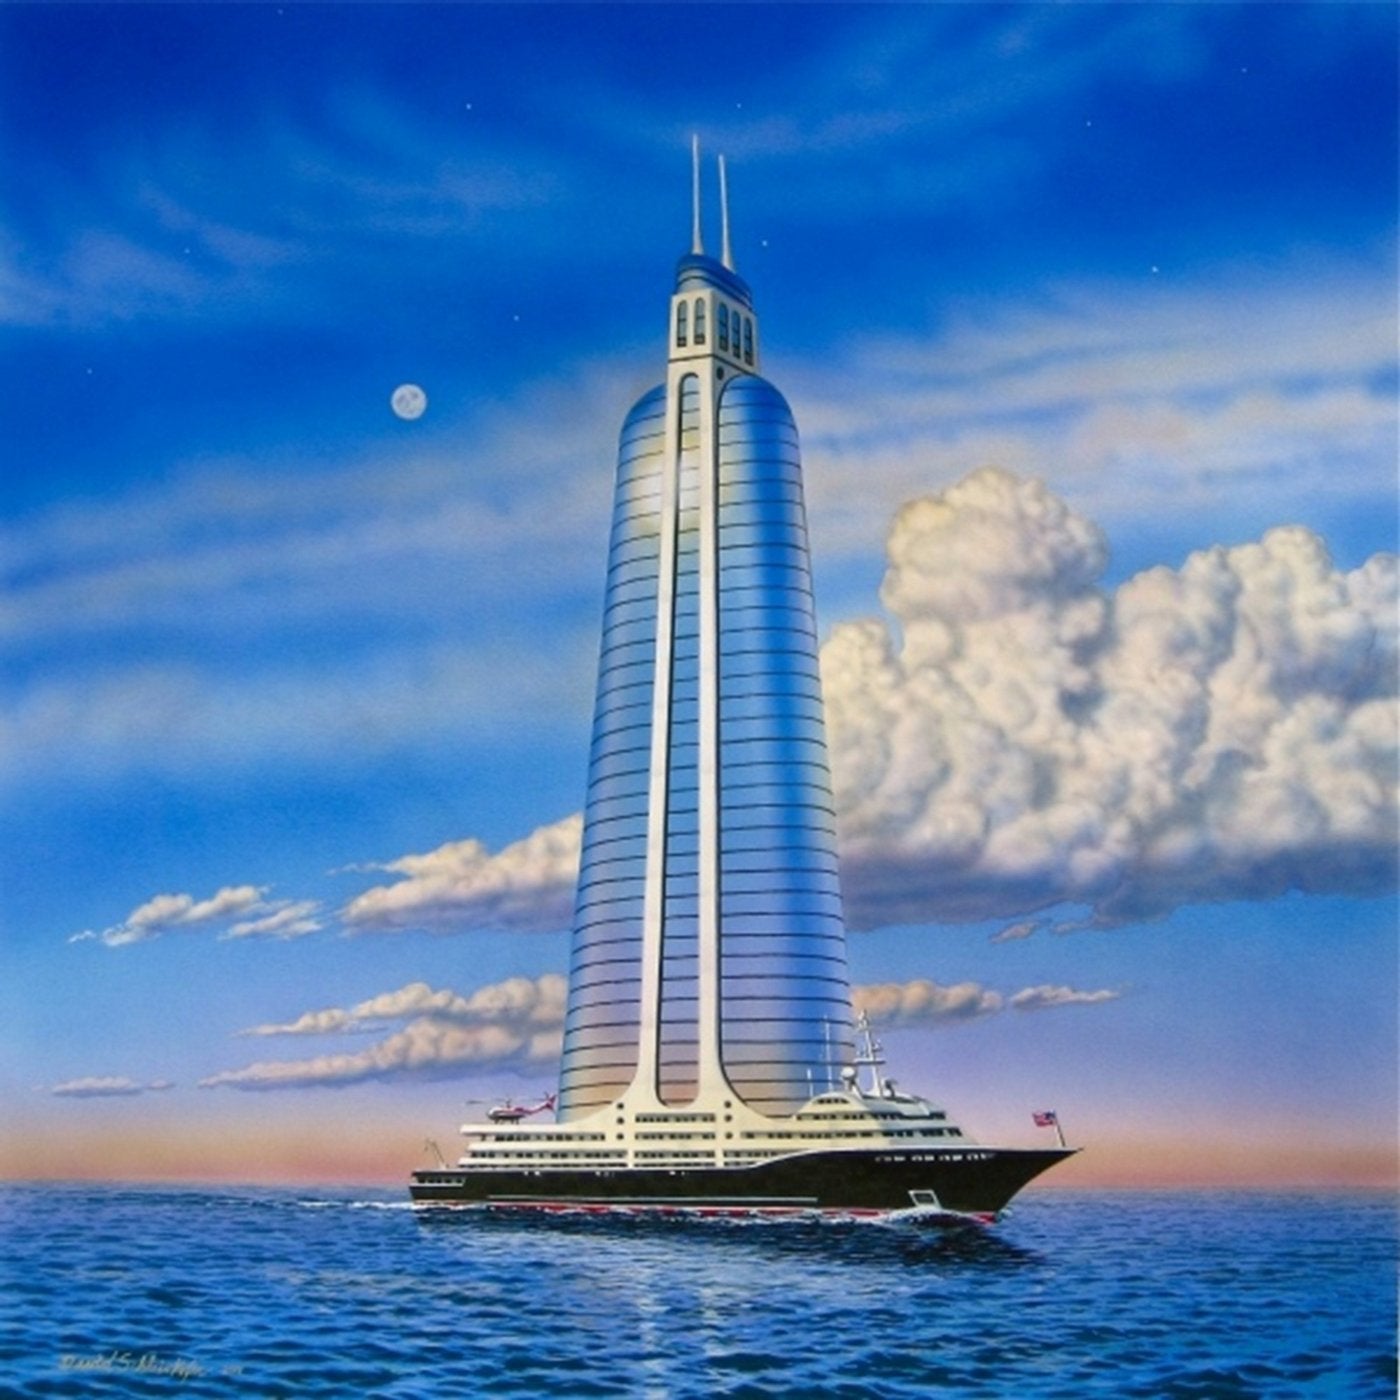 Skyscraper on a Megayacht